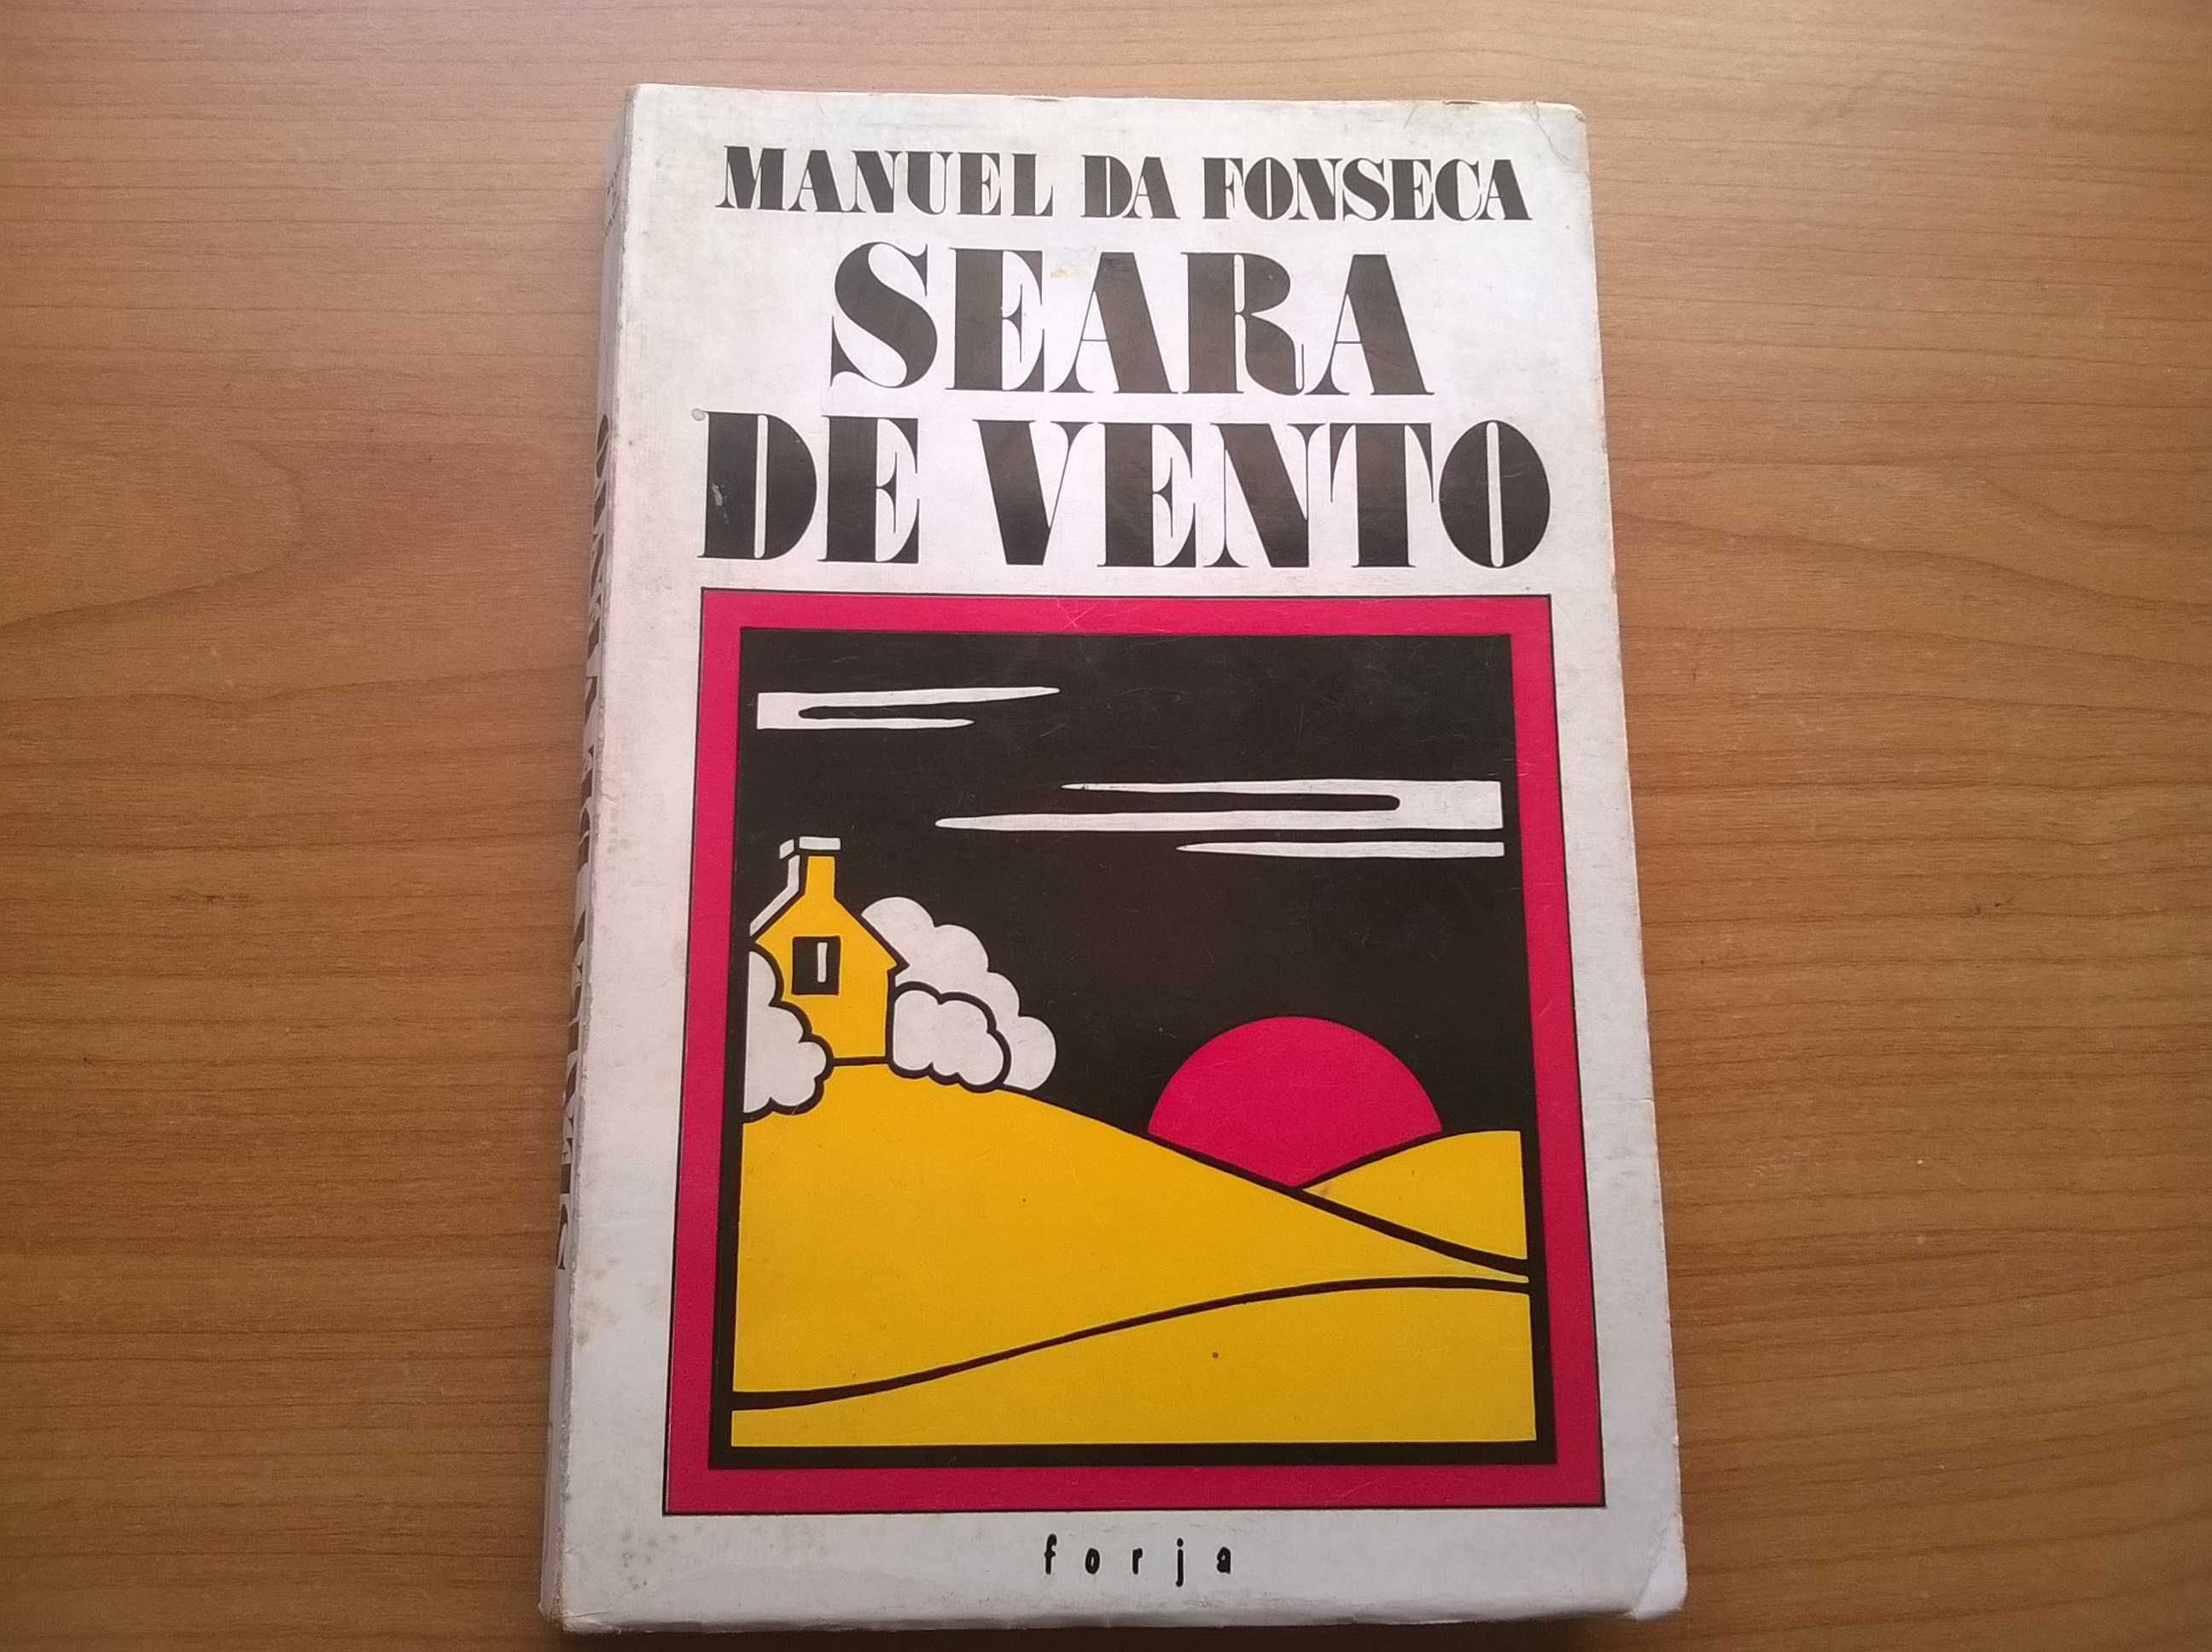 Seara de Vento - Manuel da Fonseca (portes grátis)